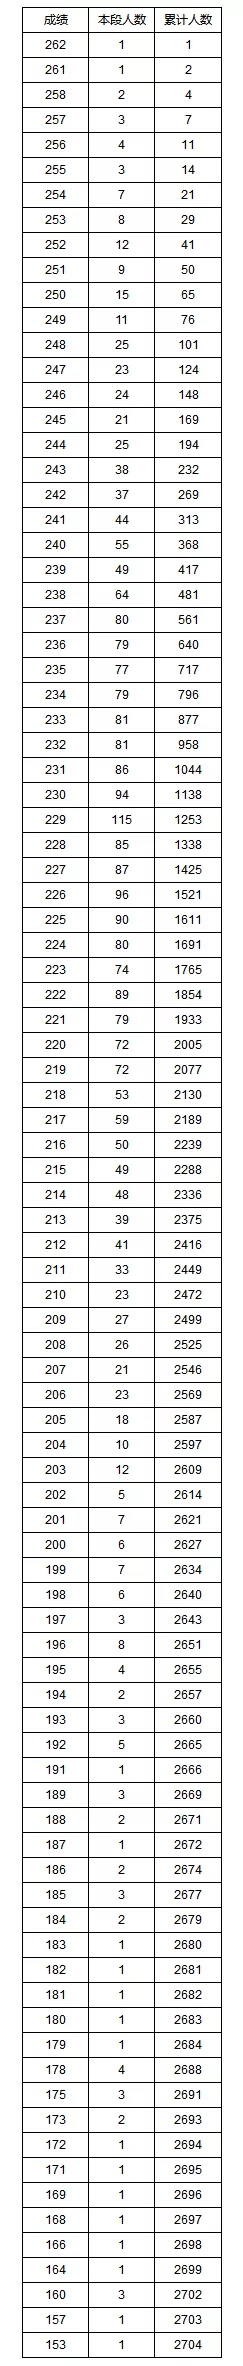 湖南省高考艺术类专业统考成绩1分段统计表